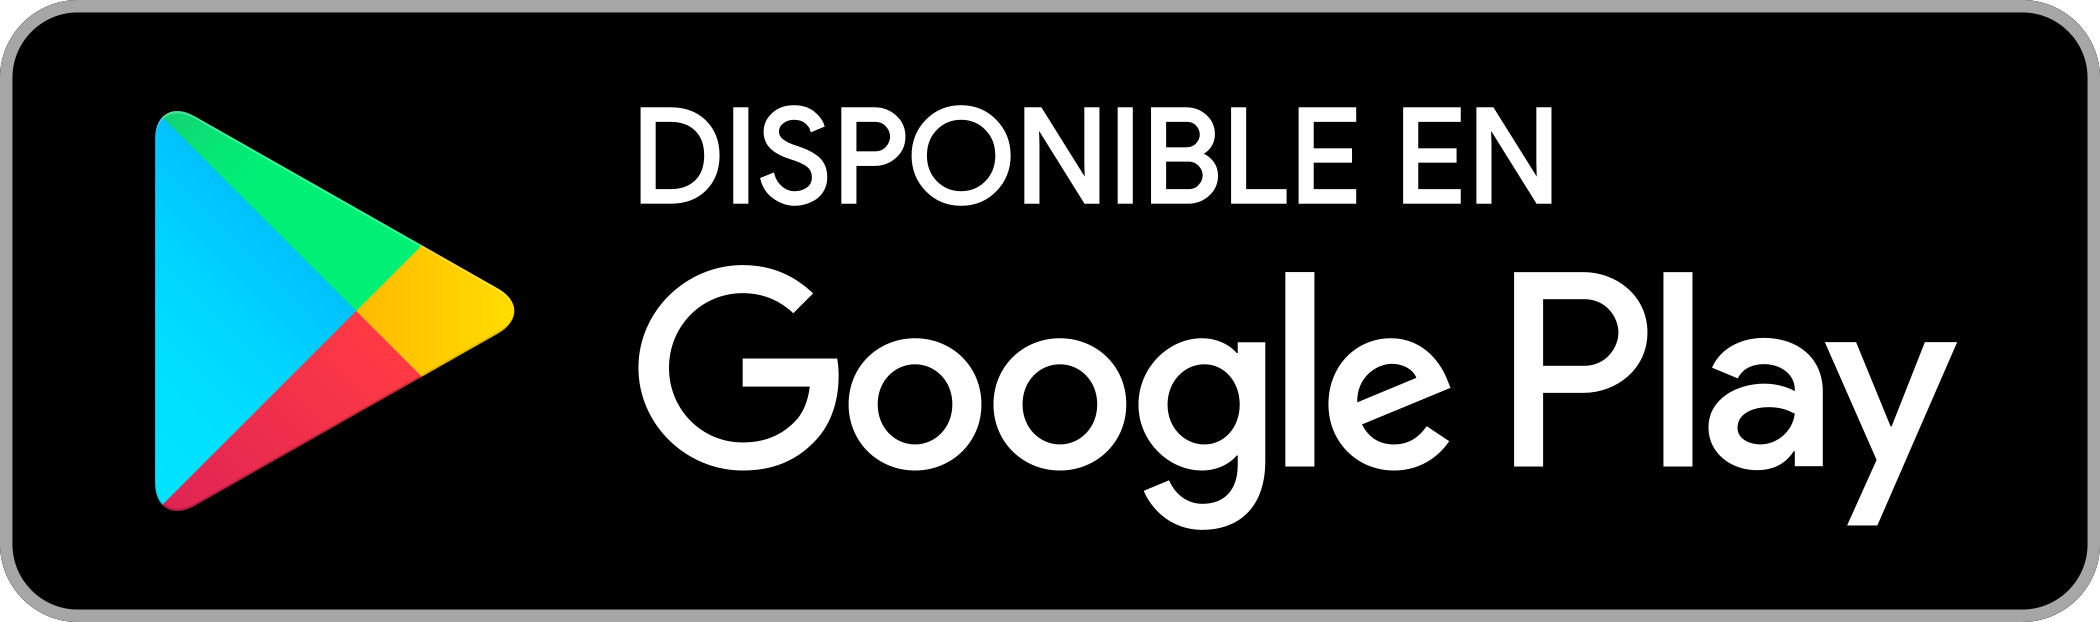 Disponible en Google Play Logo - PNG y Vector